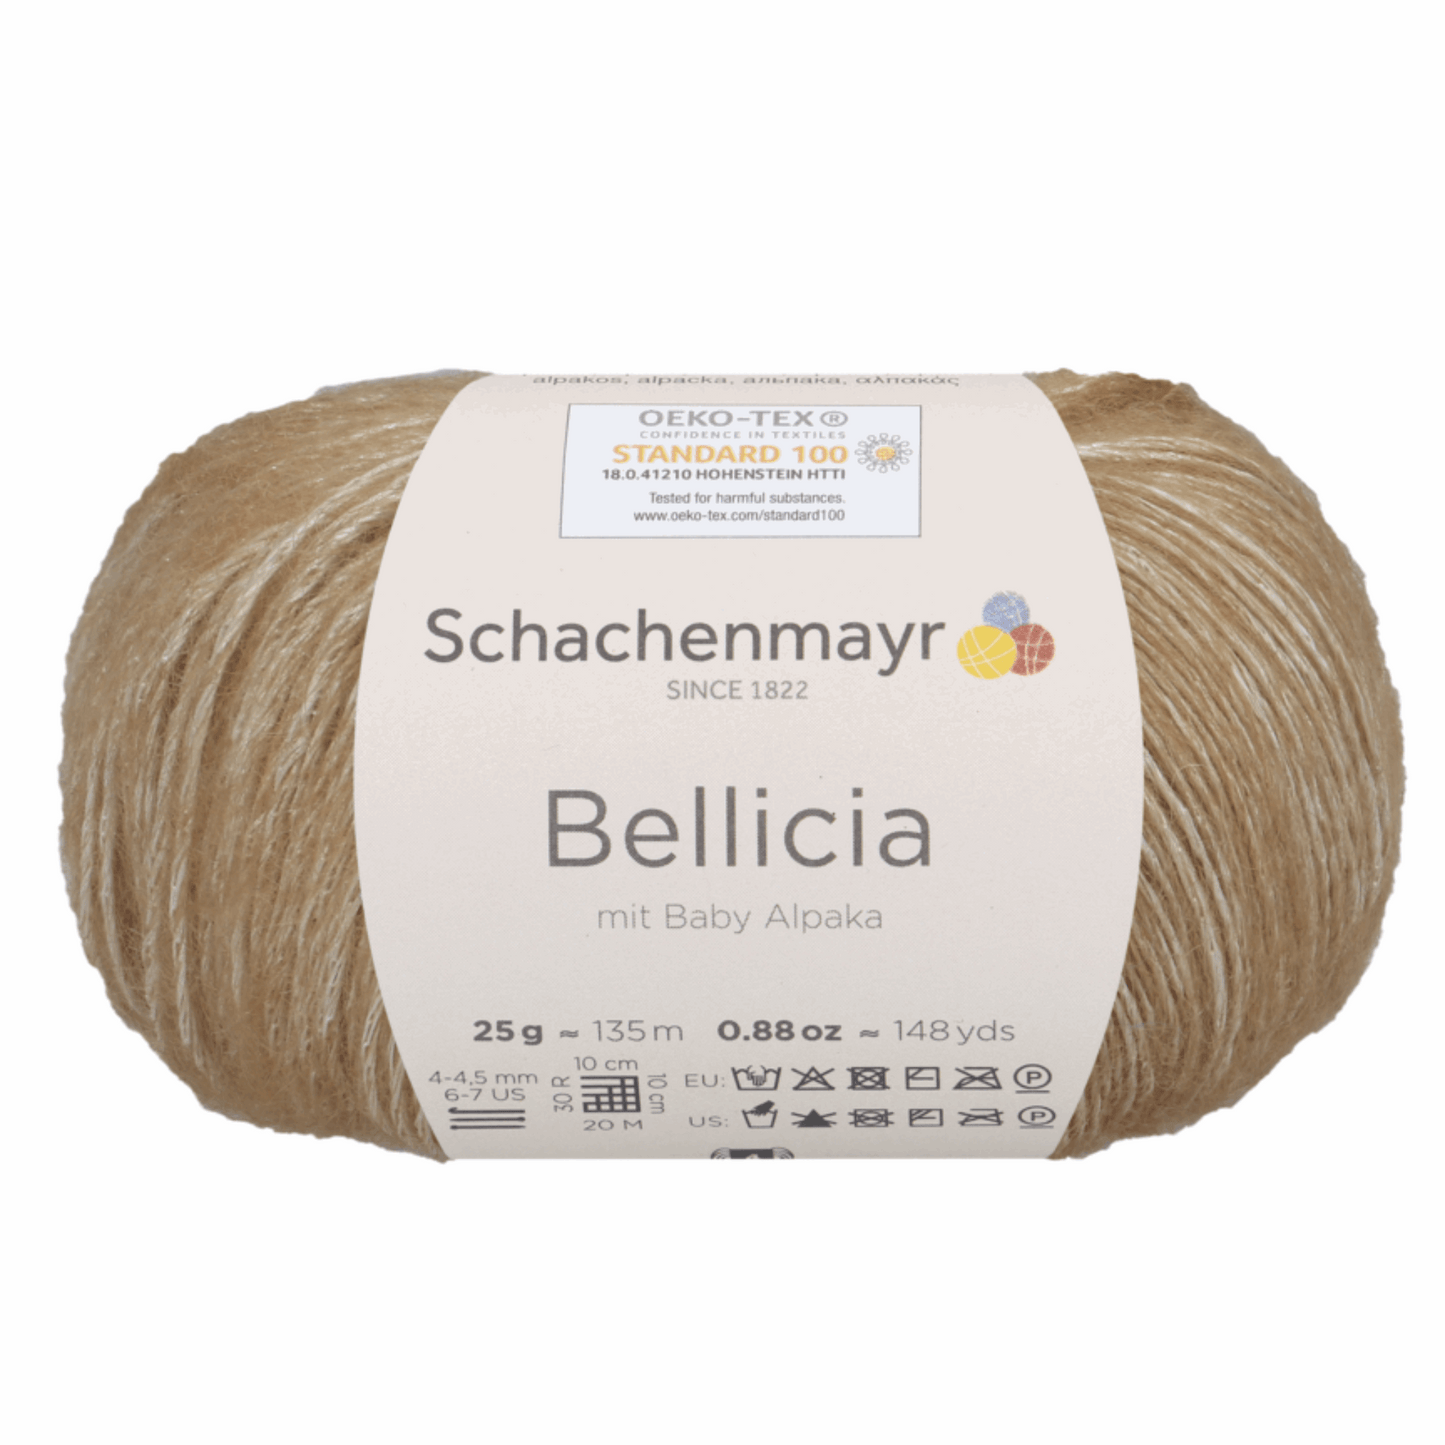 Schachenmayr Bellicia 25g, 97005, color almond 10